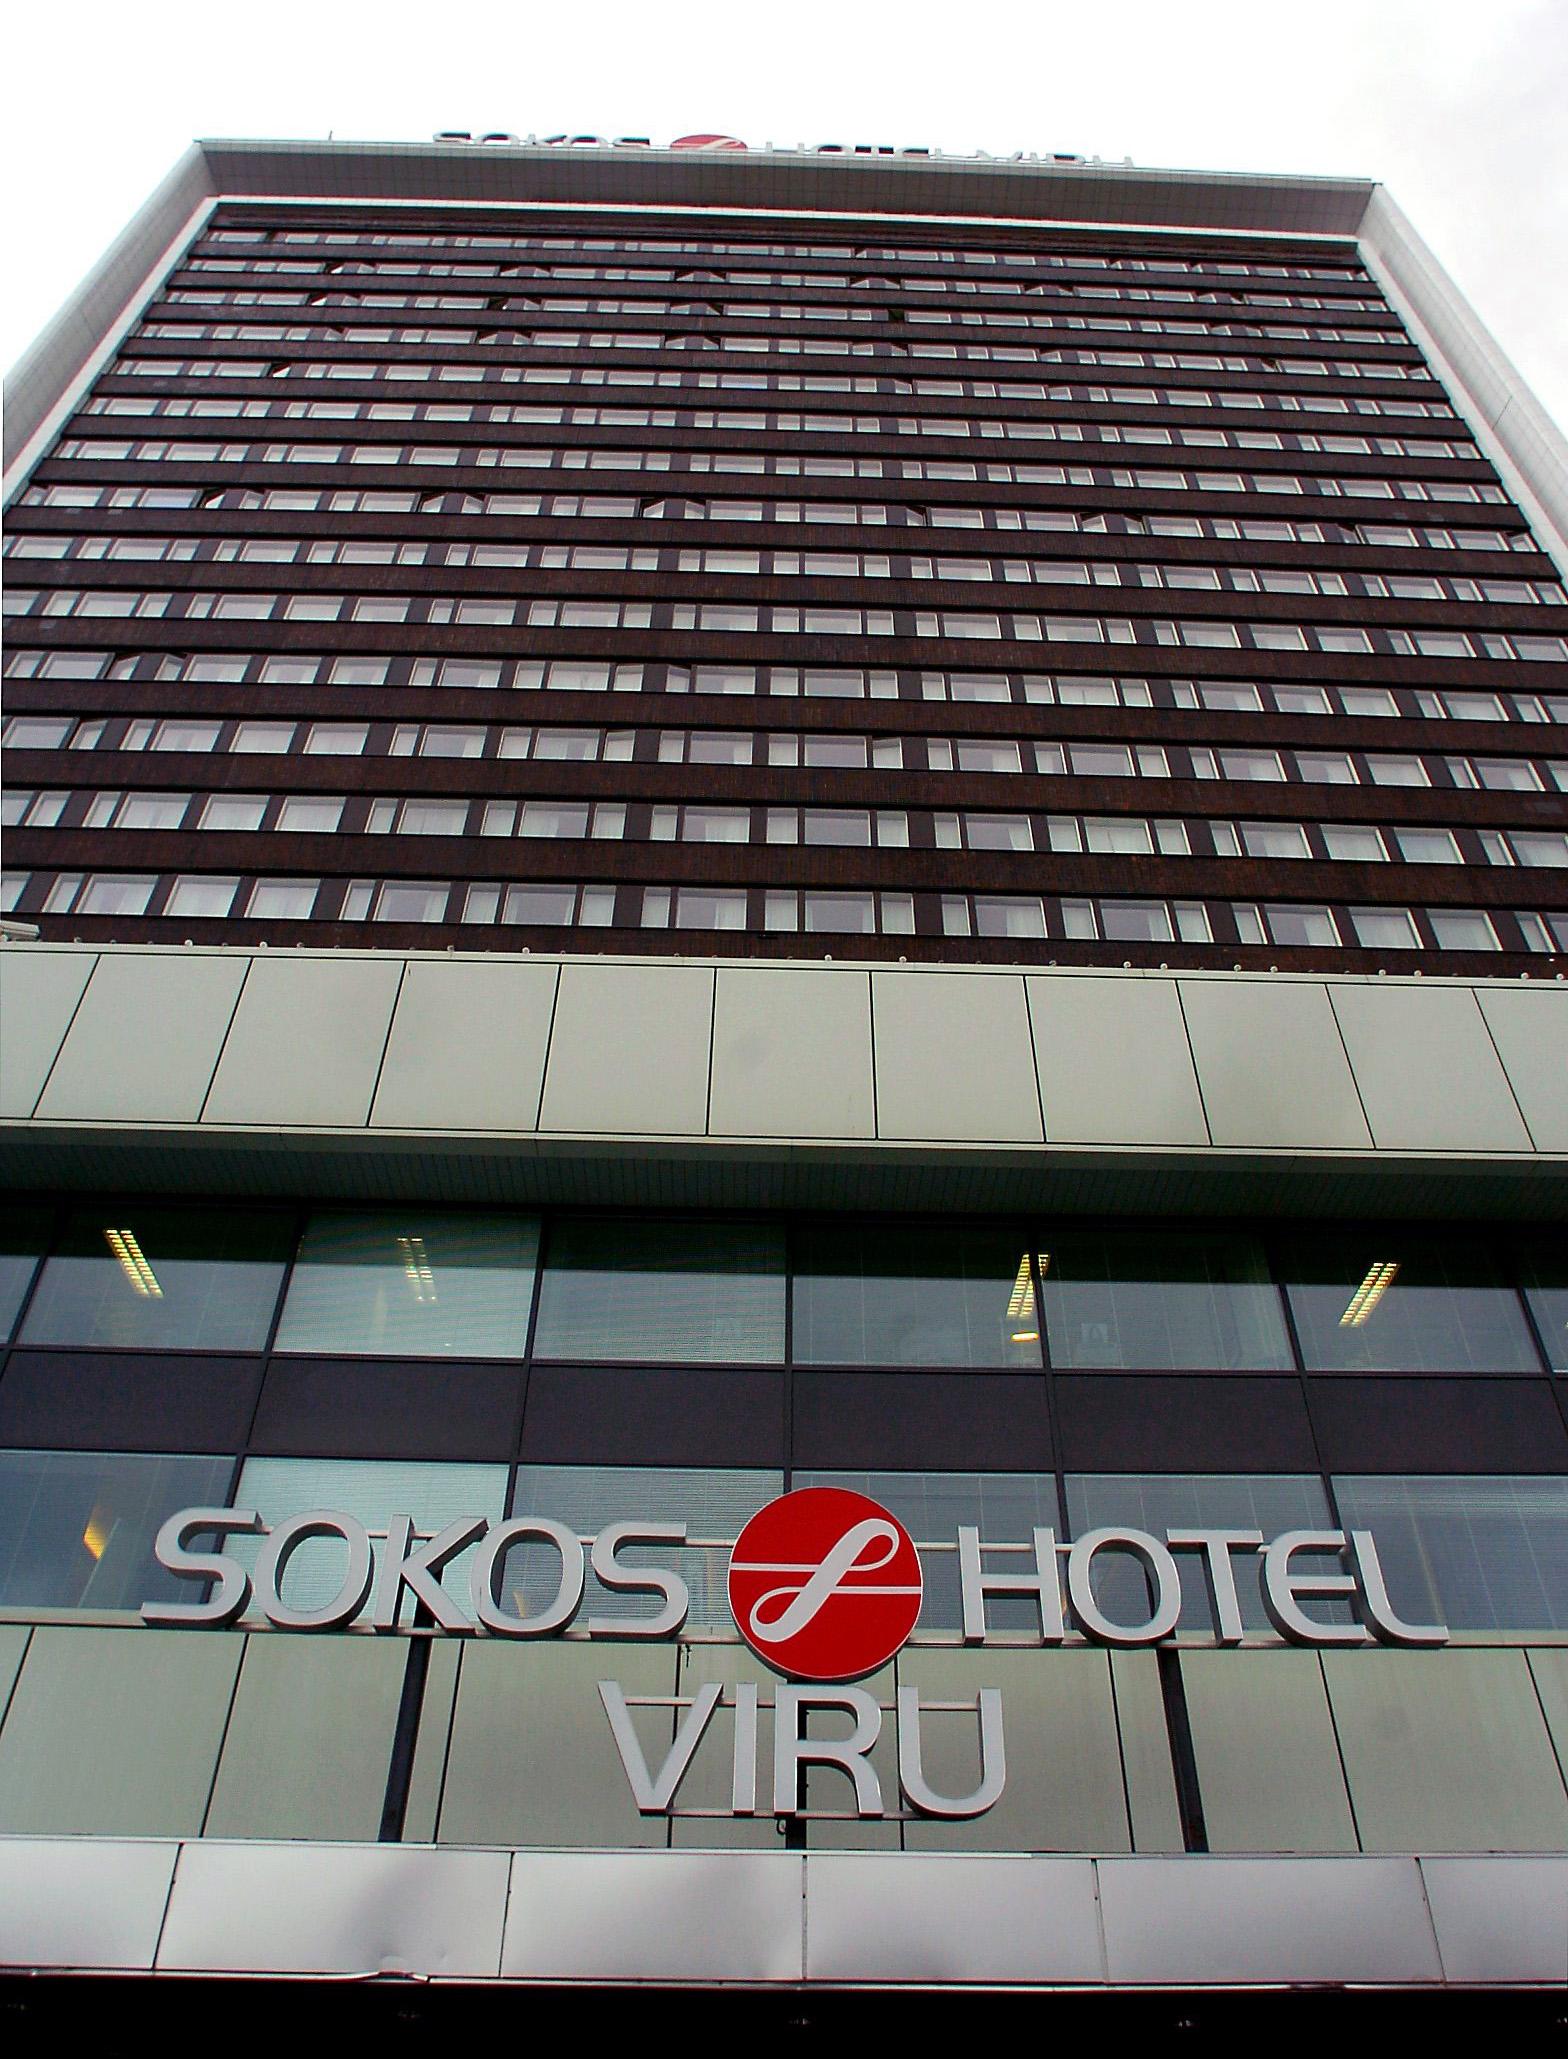 Hotel Viru där de båda svenska fackföreningsledarna Bertil Whinberg och Ove Fredriksson bodde när de mördades i januari 1991.